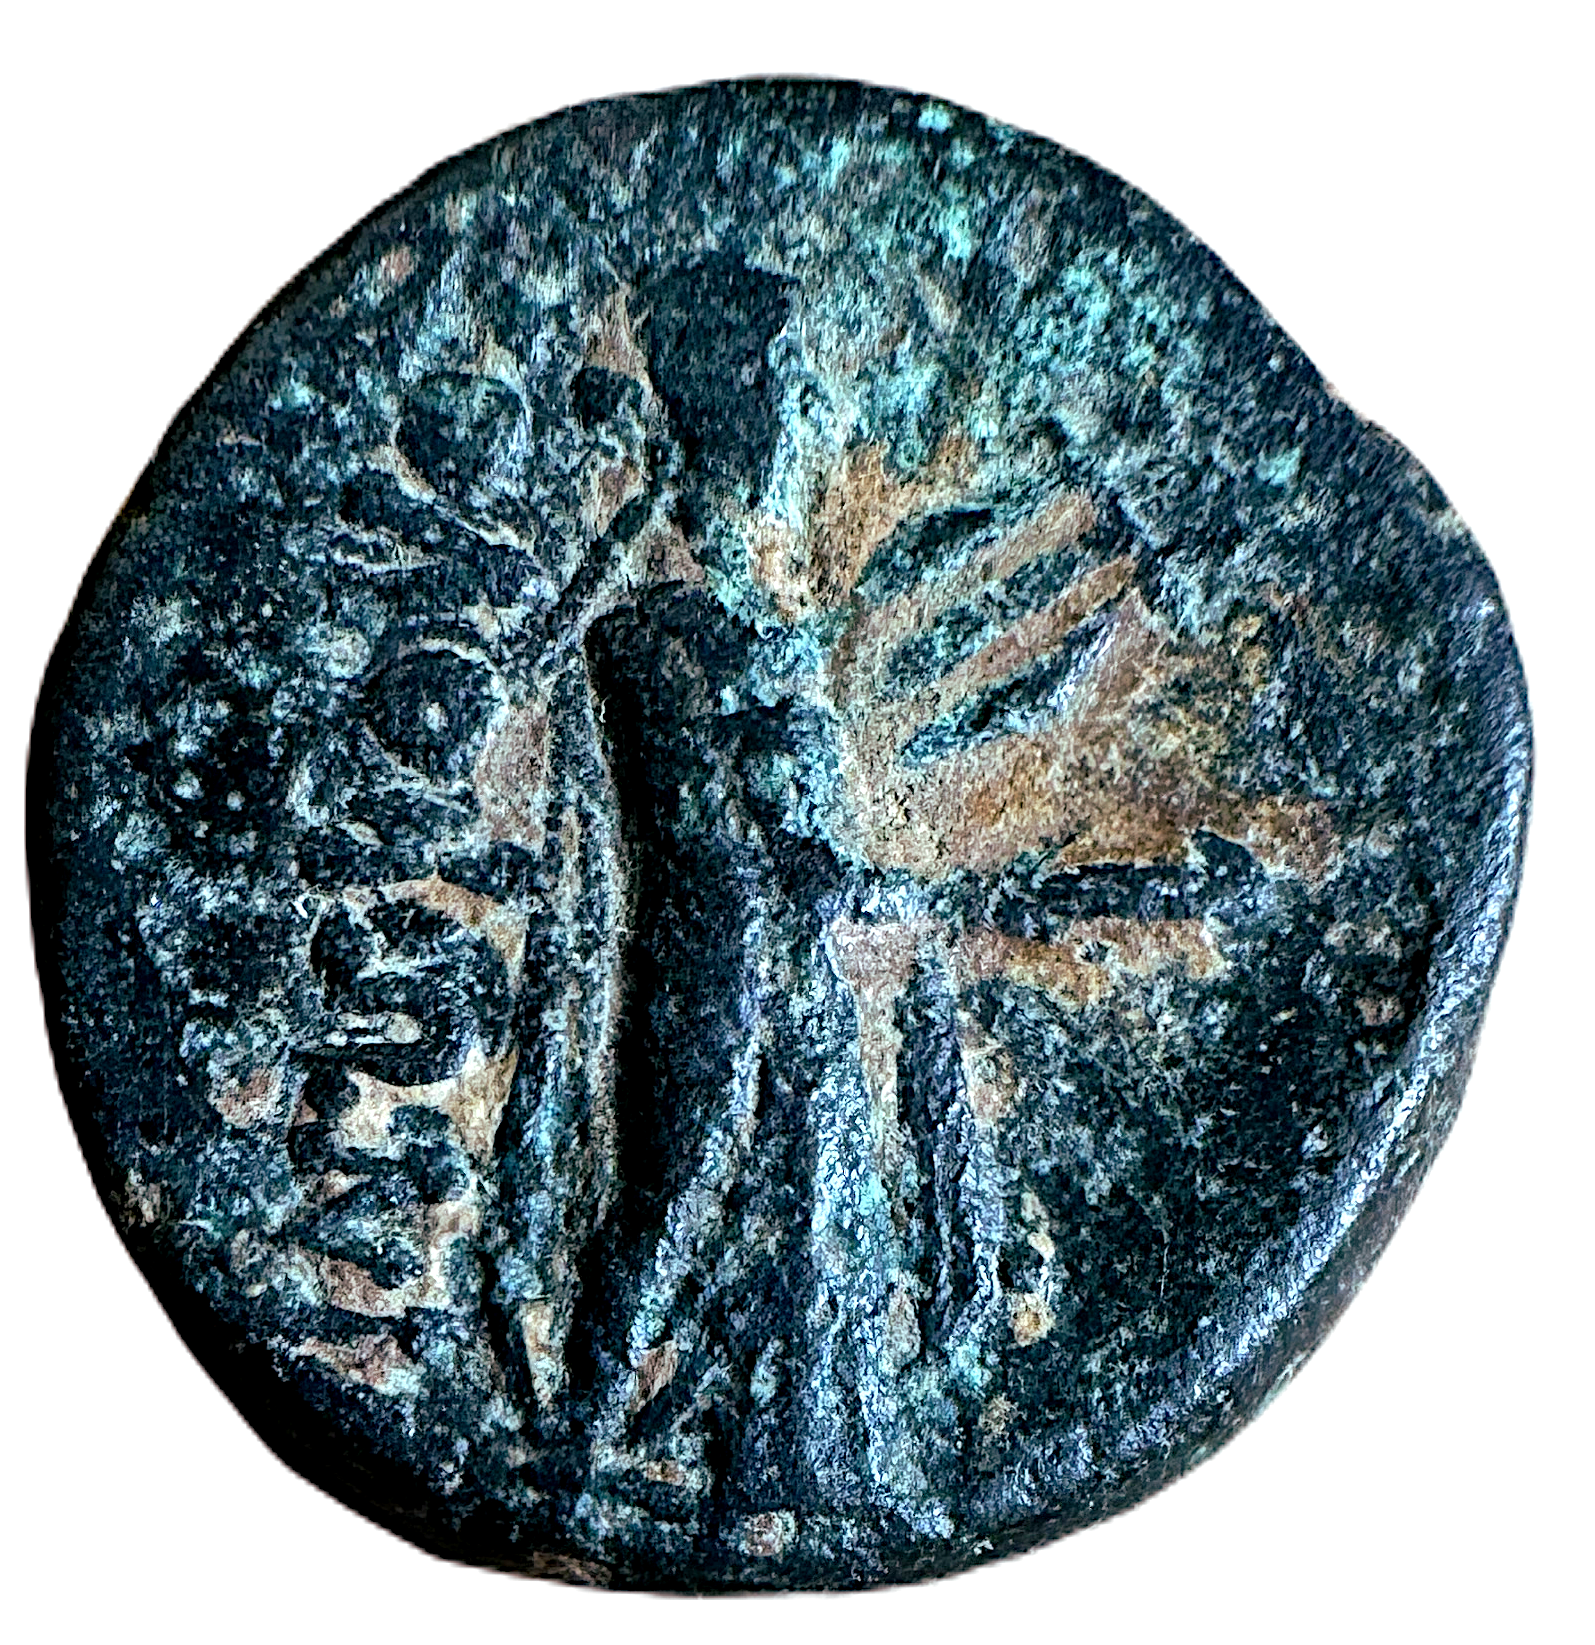 Ionien, Kolophon cirka 50-30 f.Kr avbildande en av historiens första författare Homeros